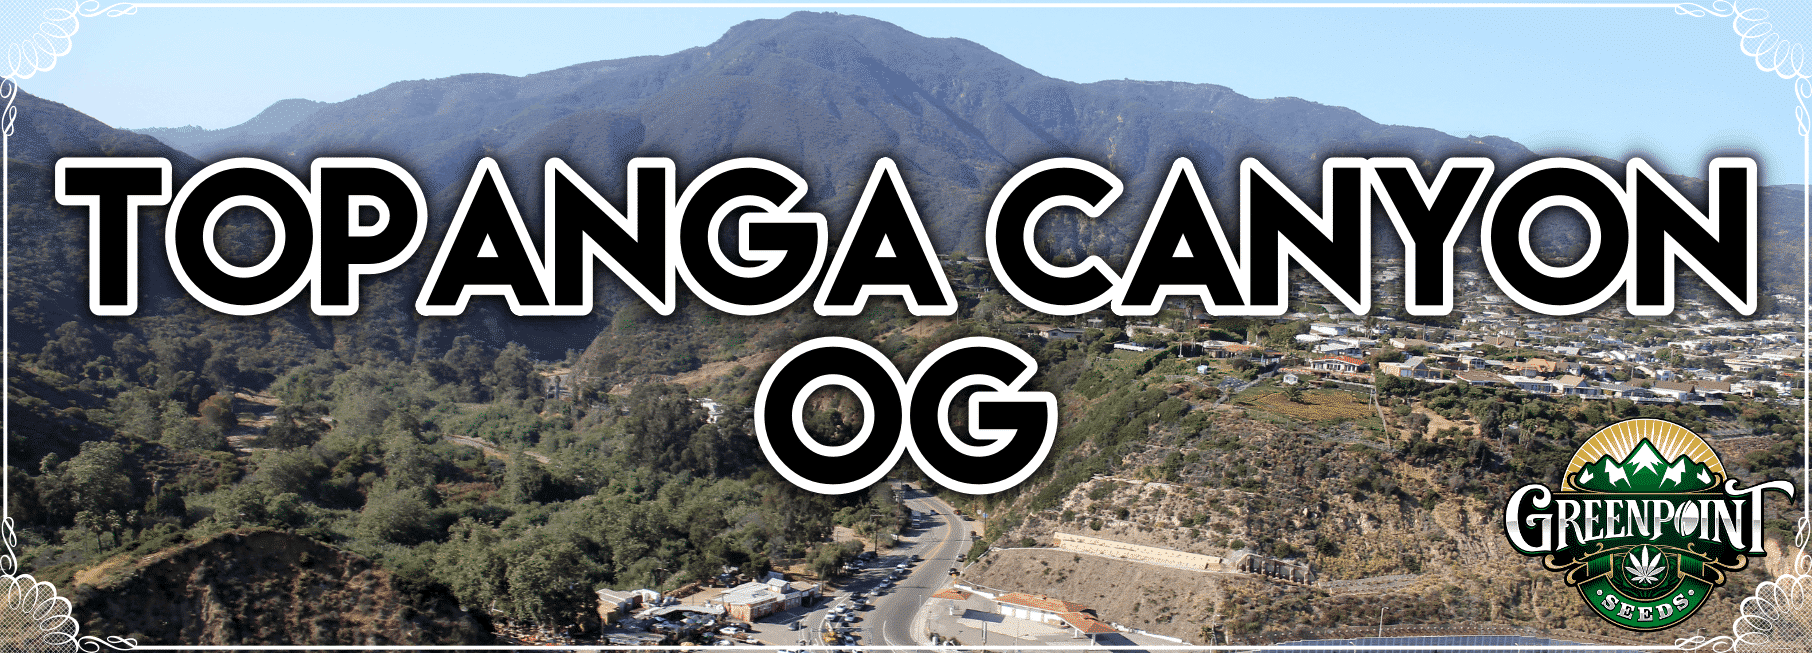 Topanga Canyon OG